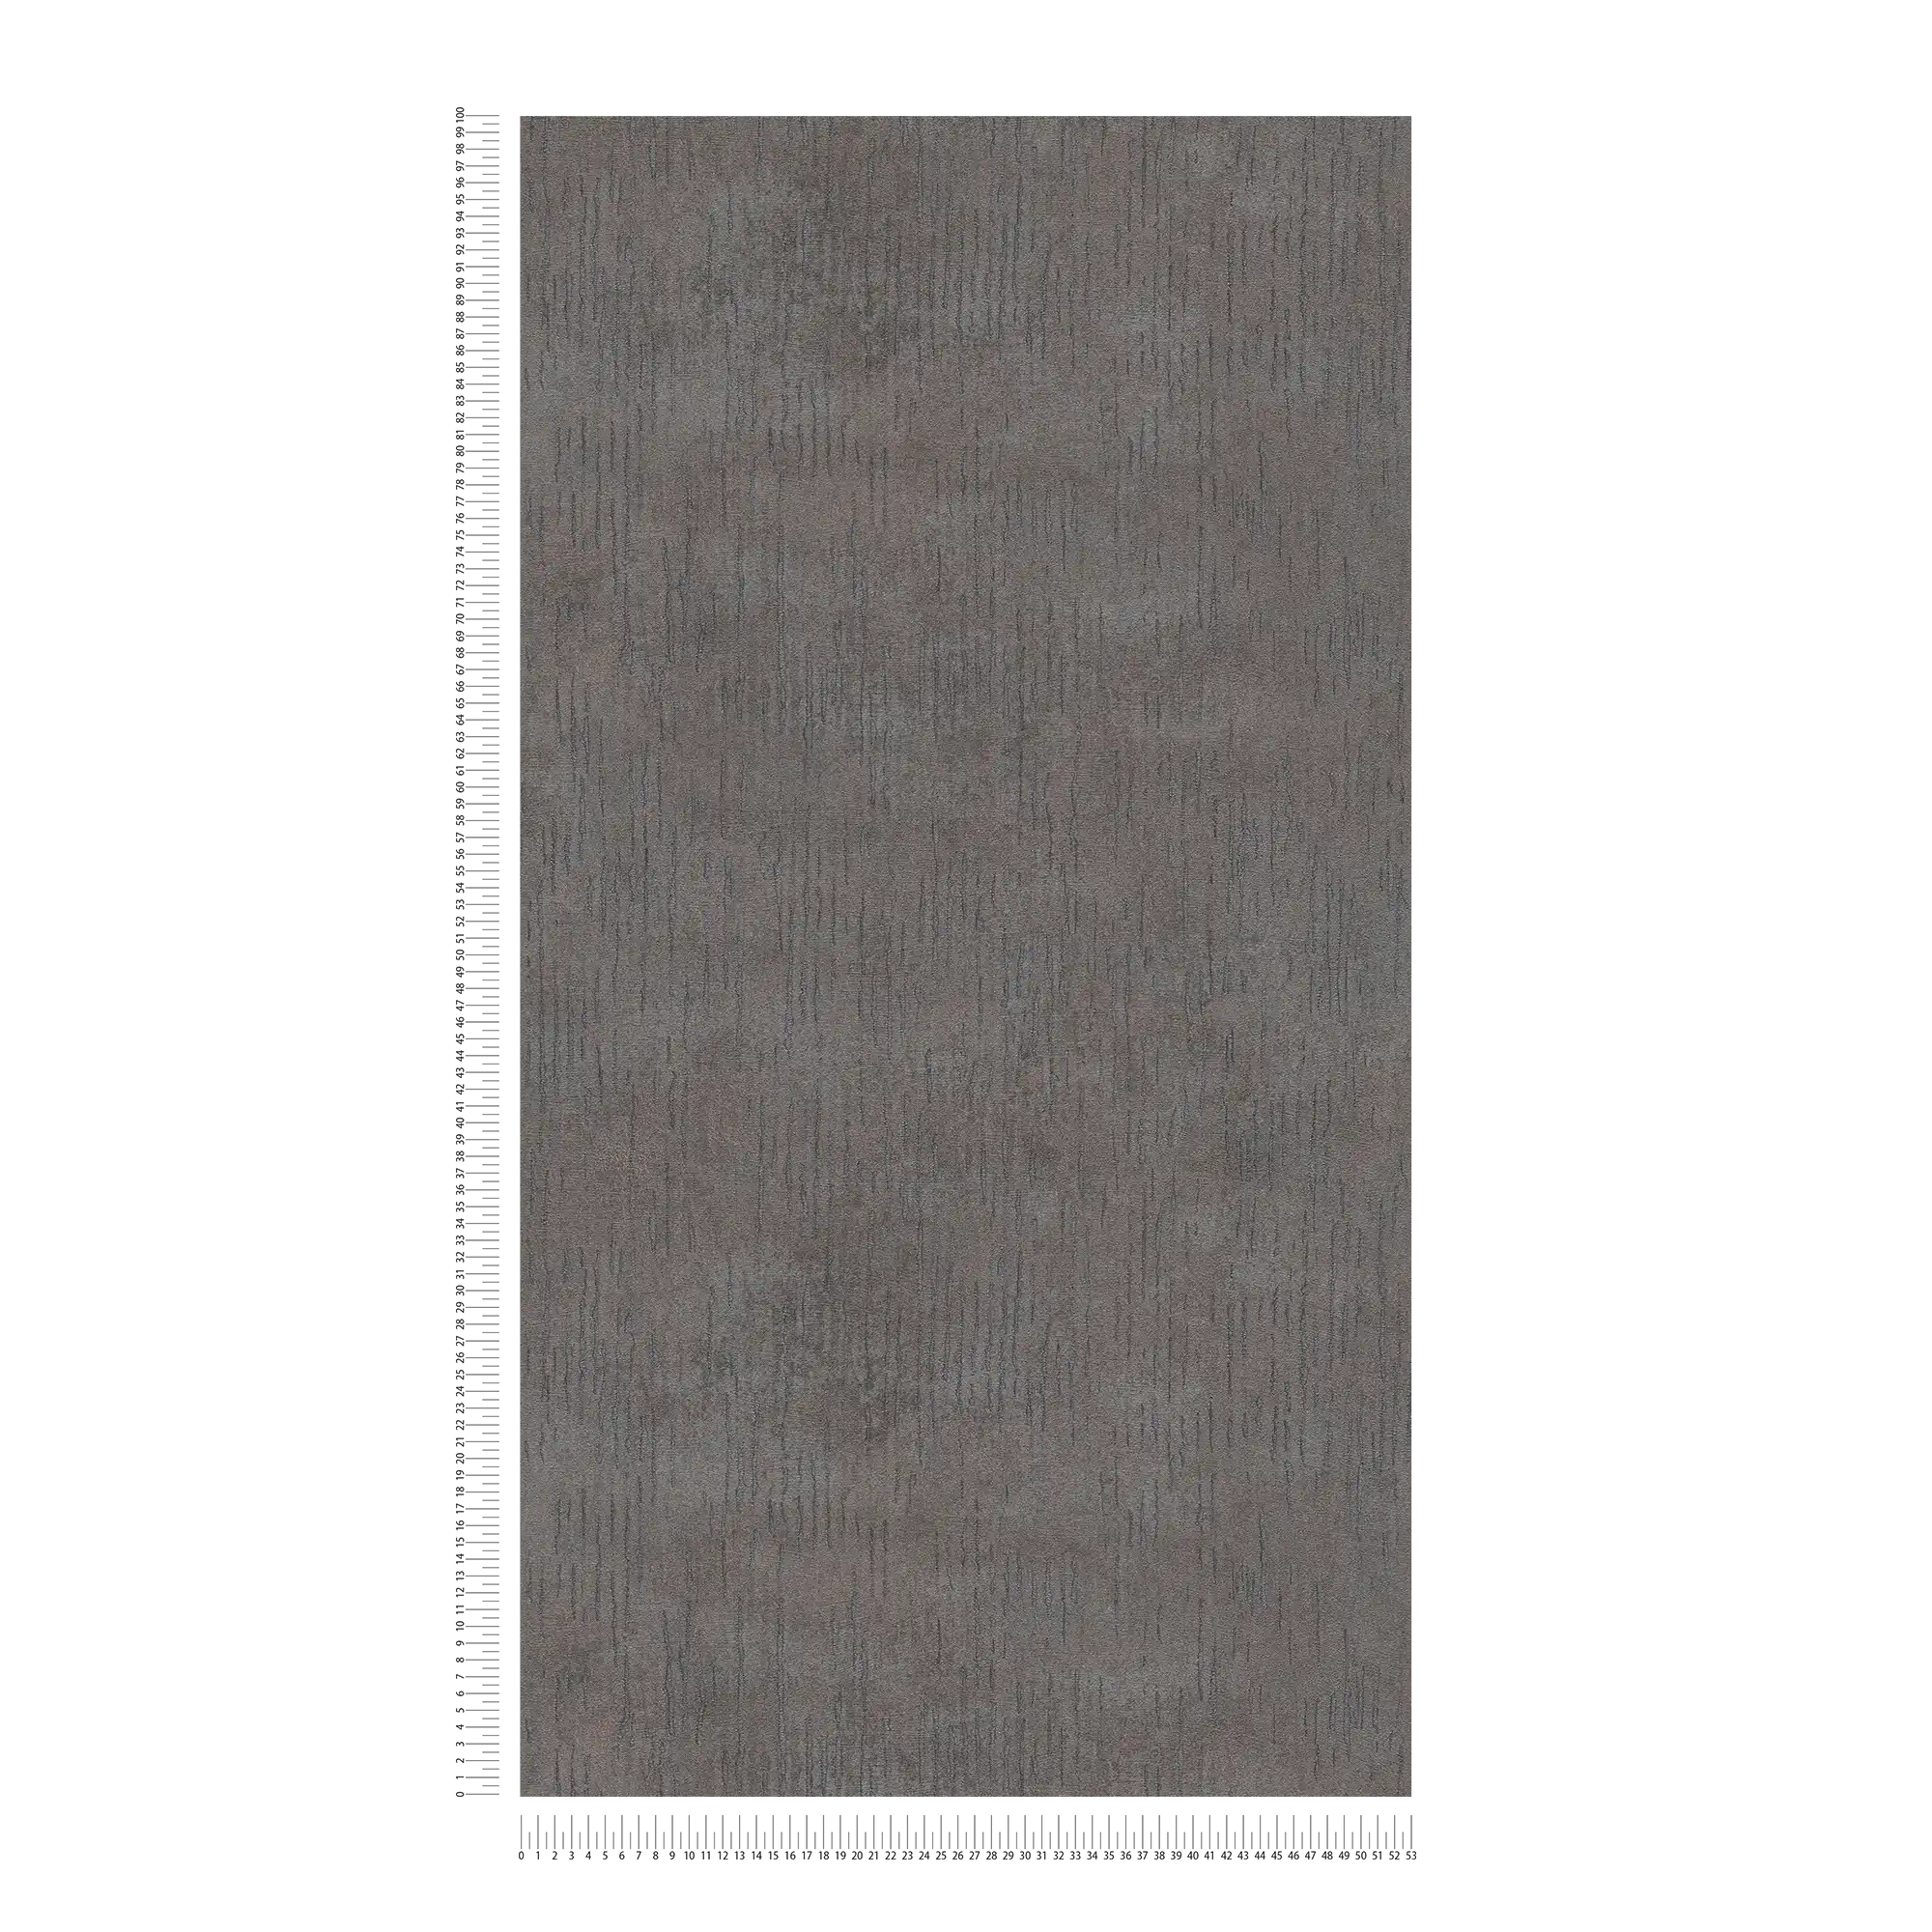             Einfarbige Tapete Anthrazit mit Metallic-Optik – Grau, Metallic, Schwarz
        